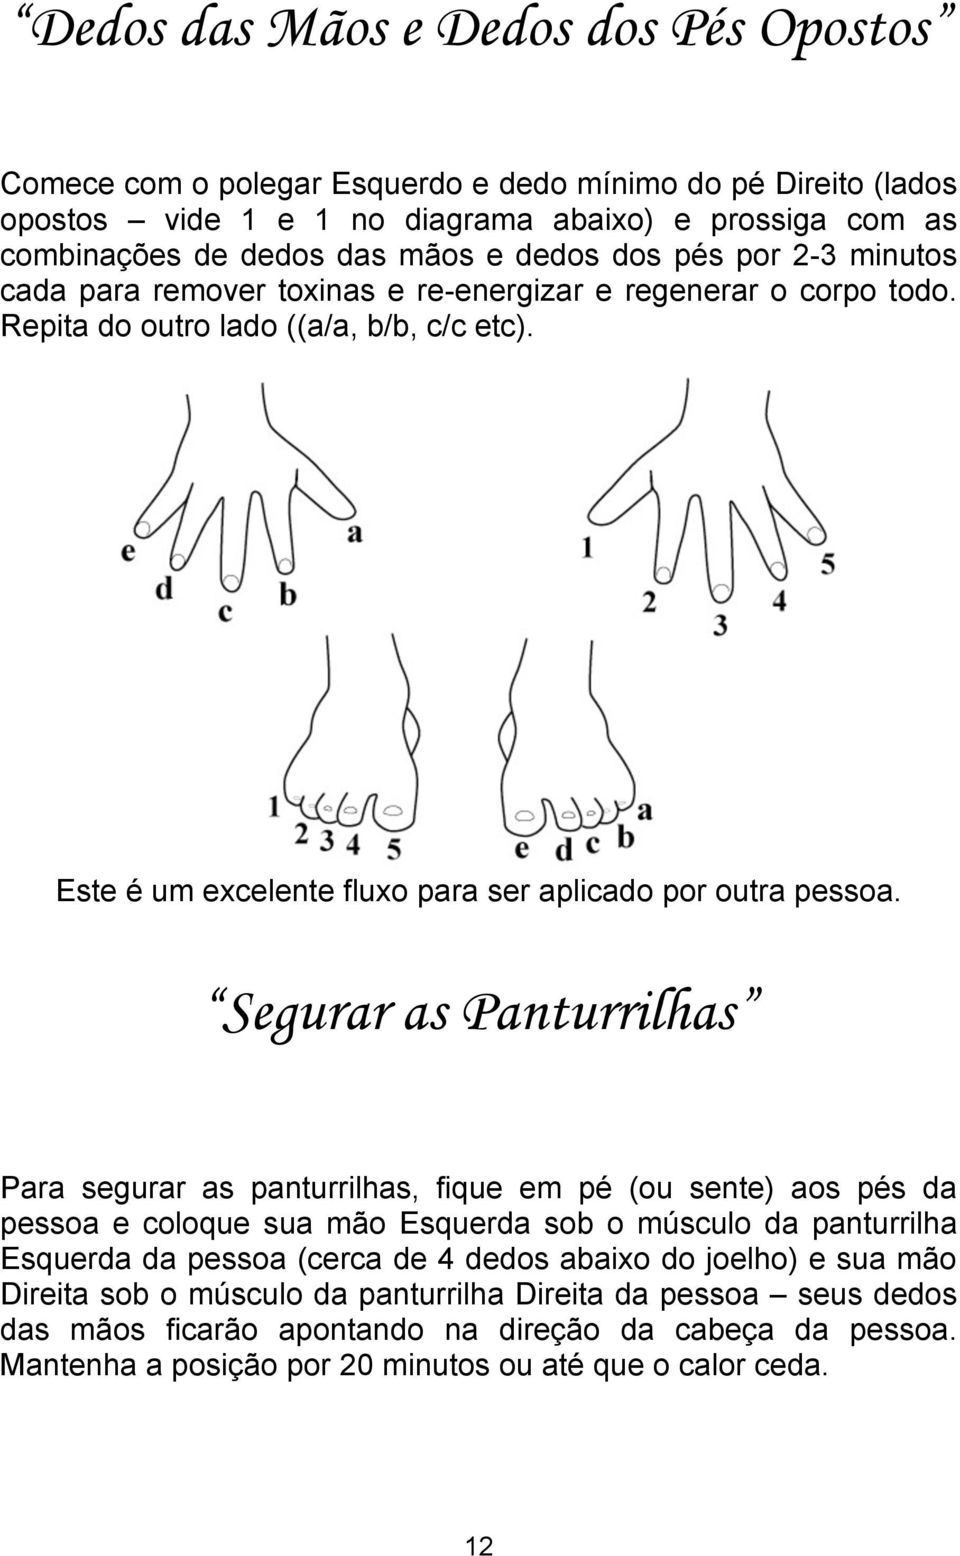 Segurar as Panturrilhas Para segurar as panturrilhas, fique em pé (ou sente) aos pés da pessoa e coloque sua mão Esquerda sob o músculo da panturrilha Esquerda da pessoa (cerca de 4 dedos abaixo do